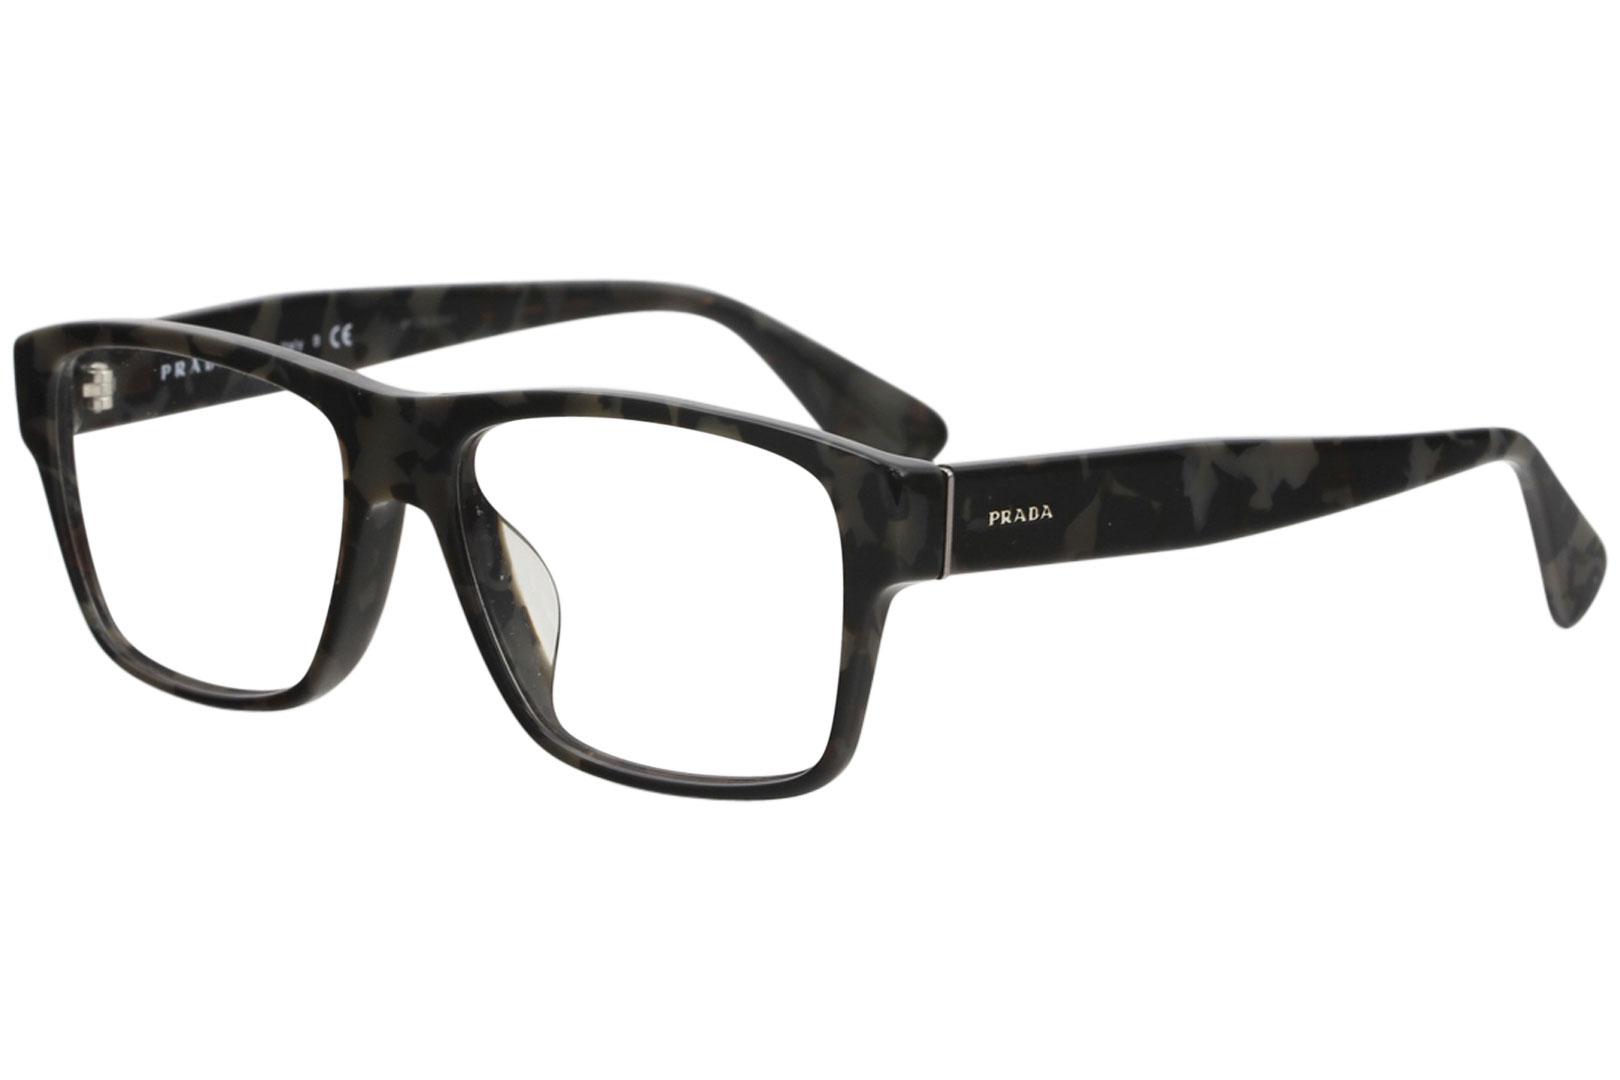 prada eyeglass frames canada